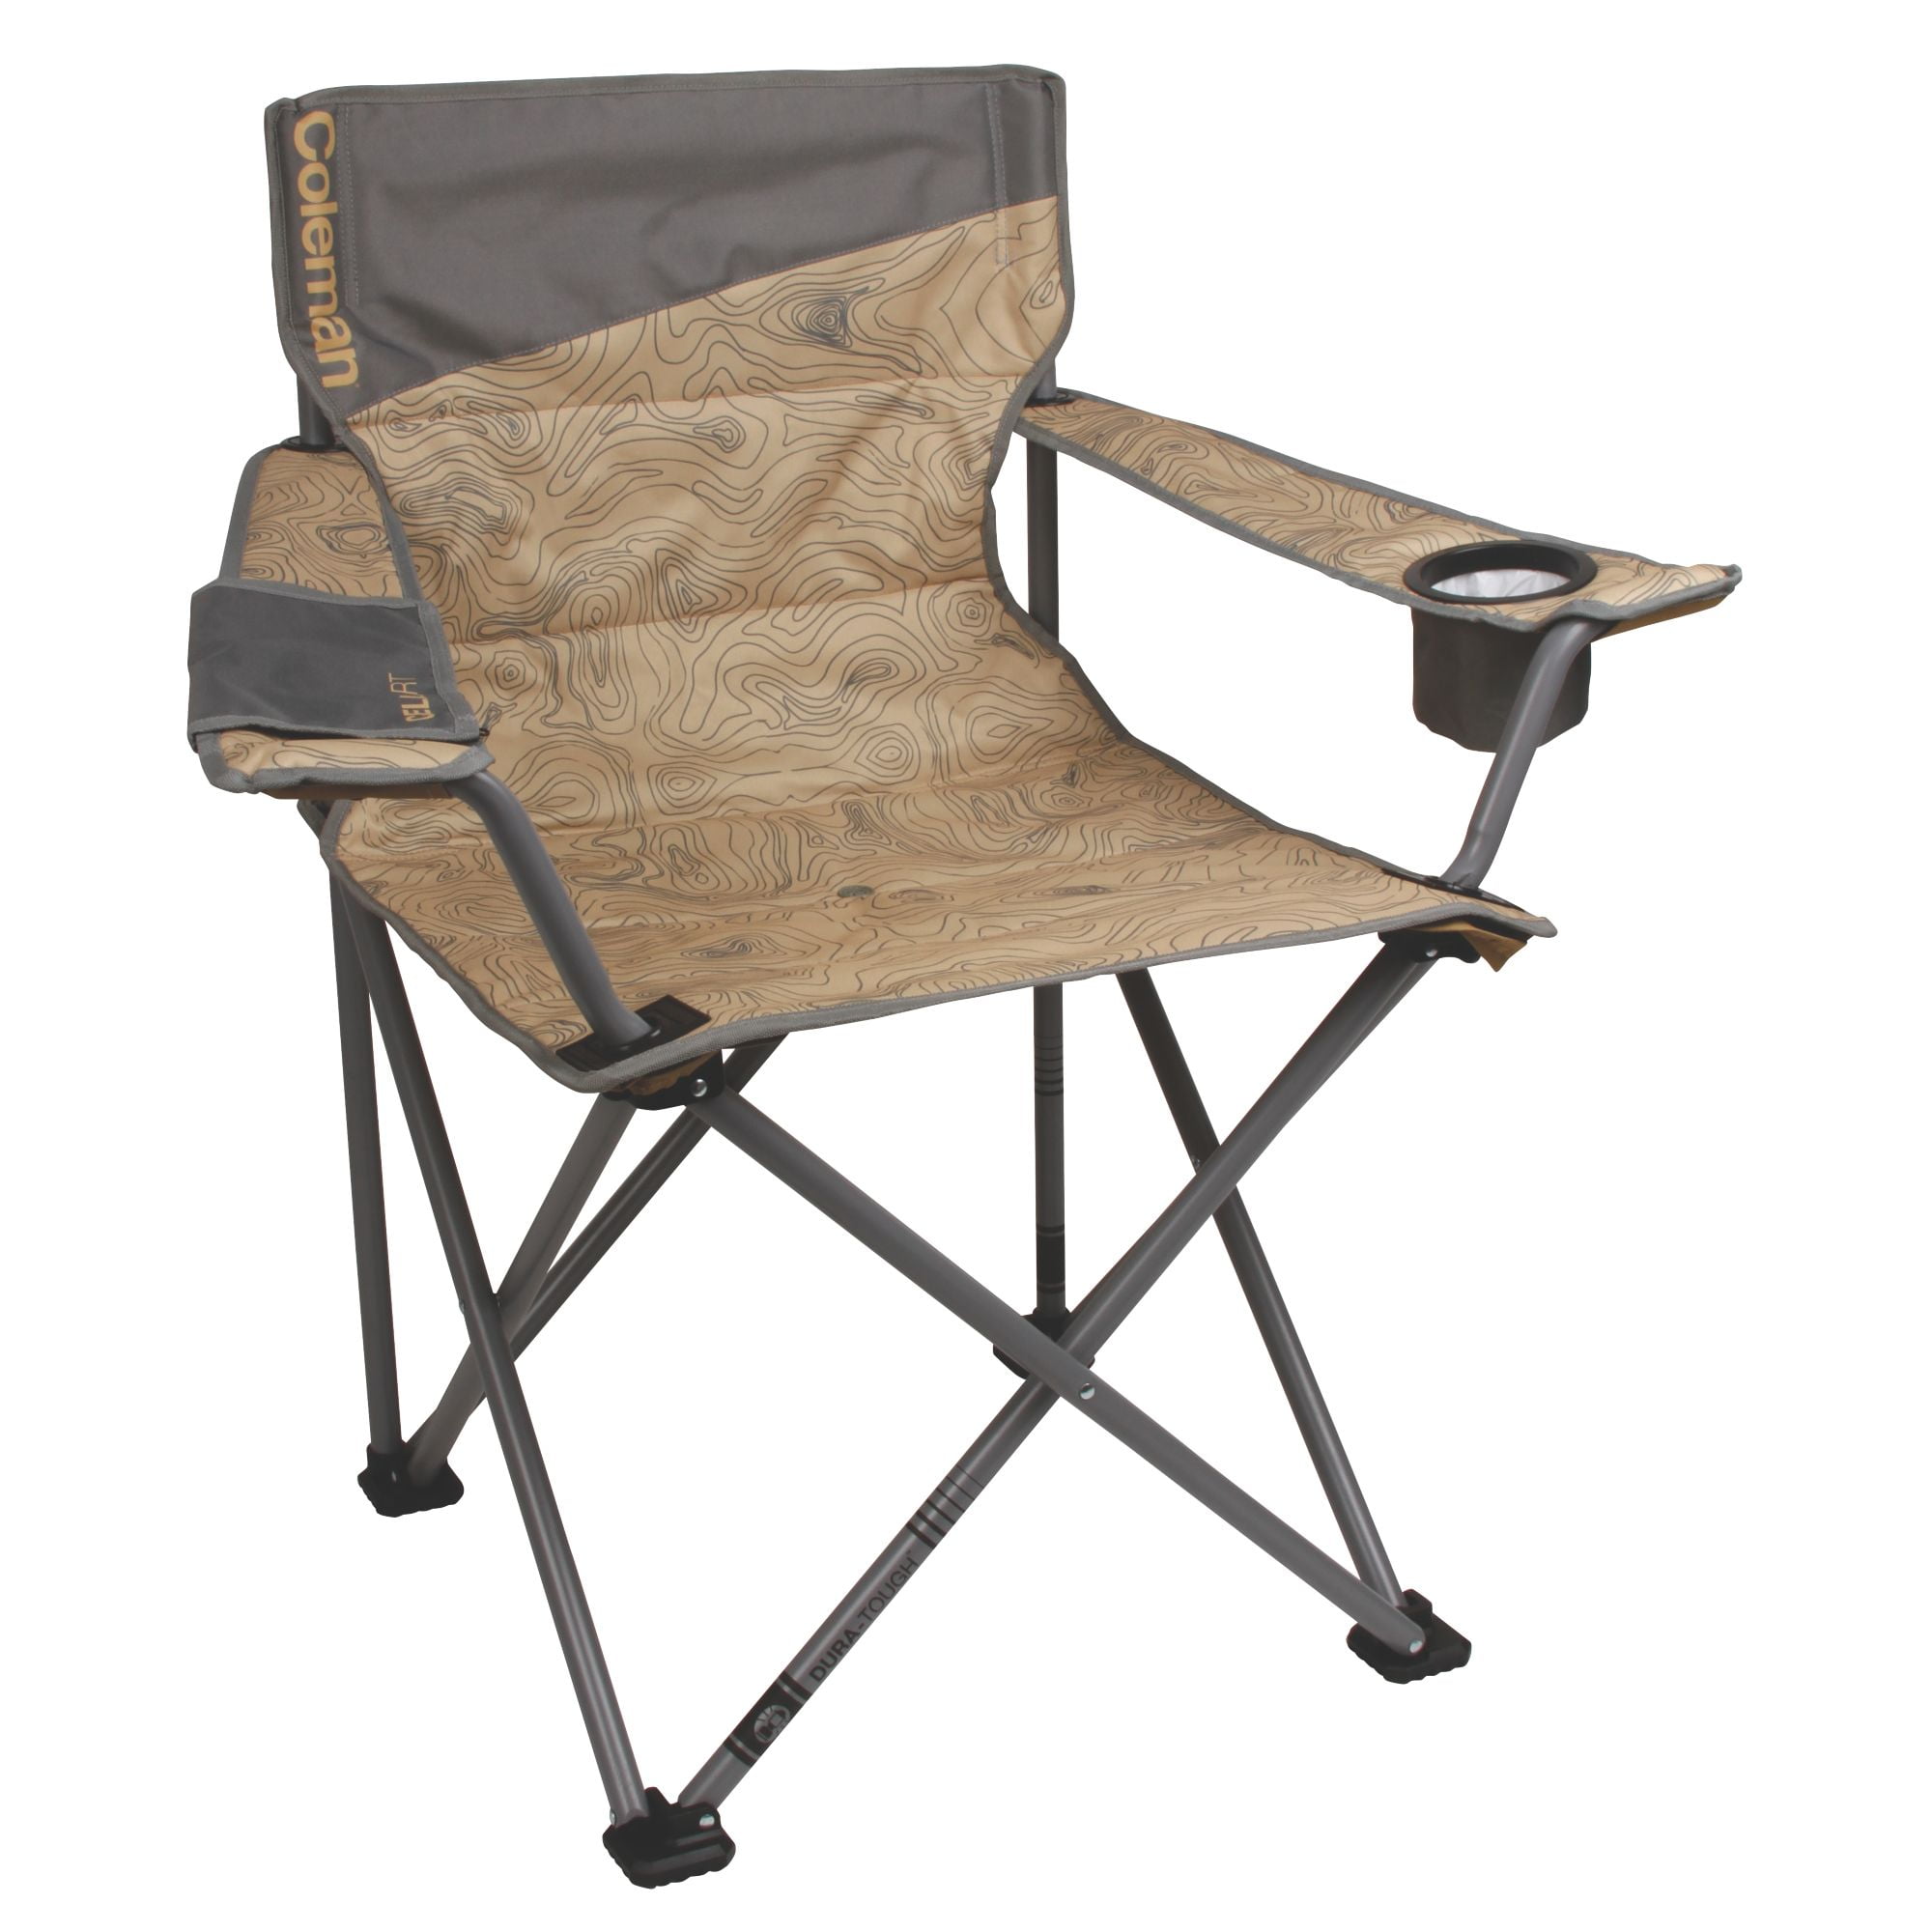 Coleman Adult Camping Quad Chair, Gray - Walmart.com